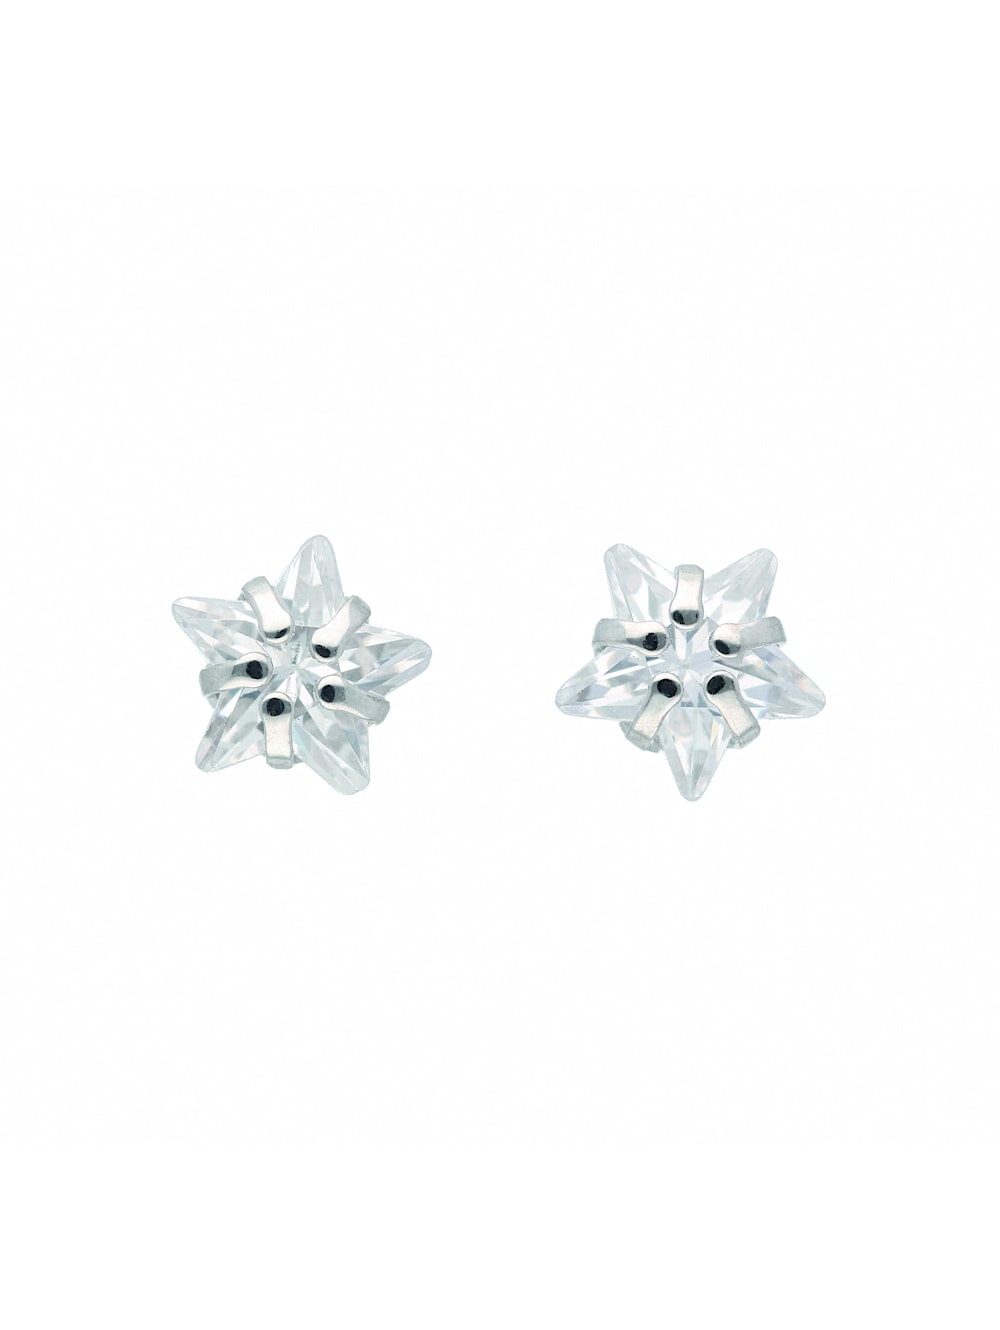 1001 Diamonds Damen Silberschmuck 1 Paar 925 Silber Ohrringe / Ohrstecker  Stern mit Zirkonia | Wenz